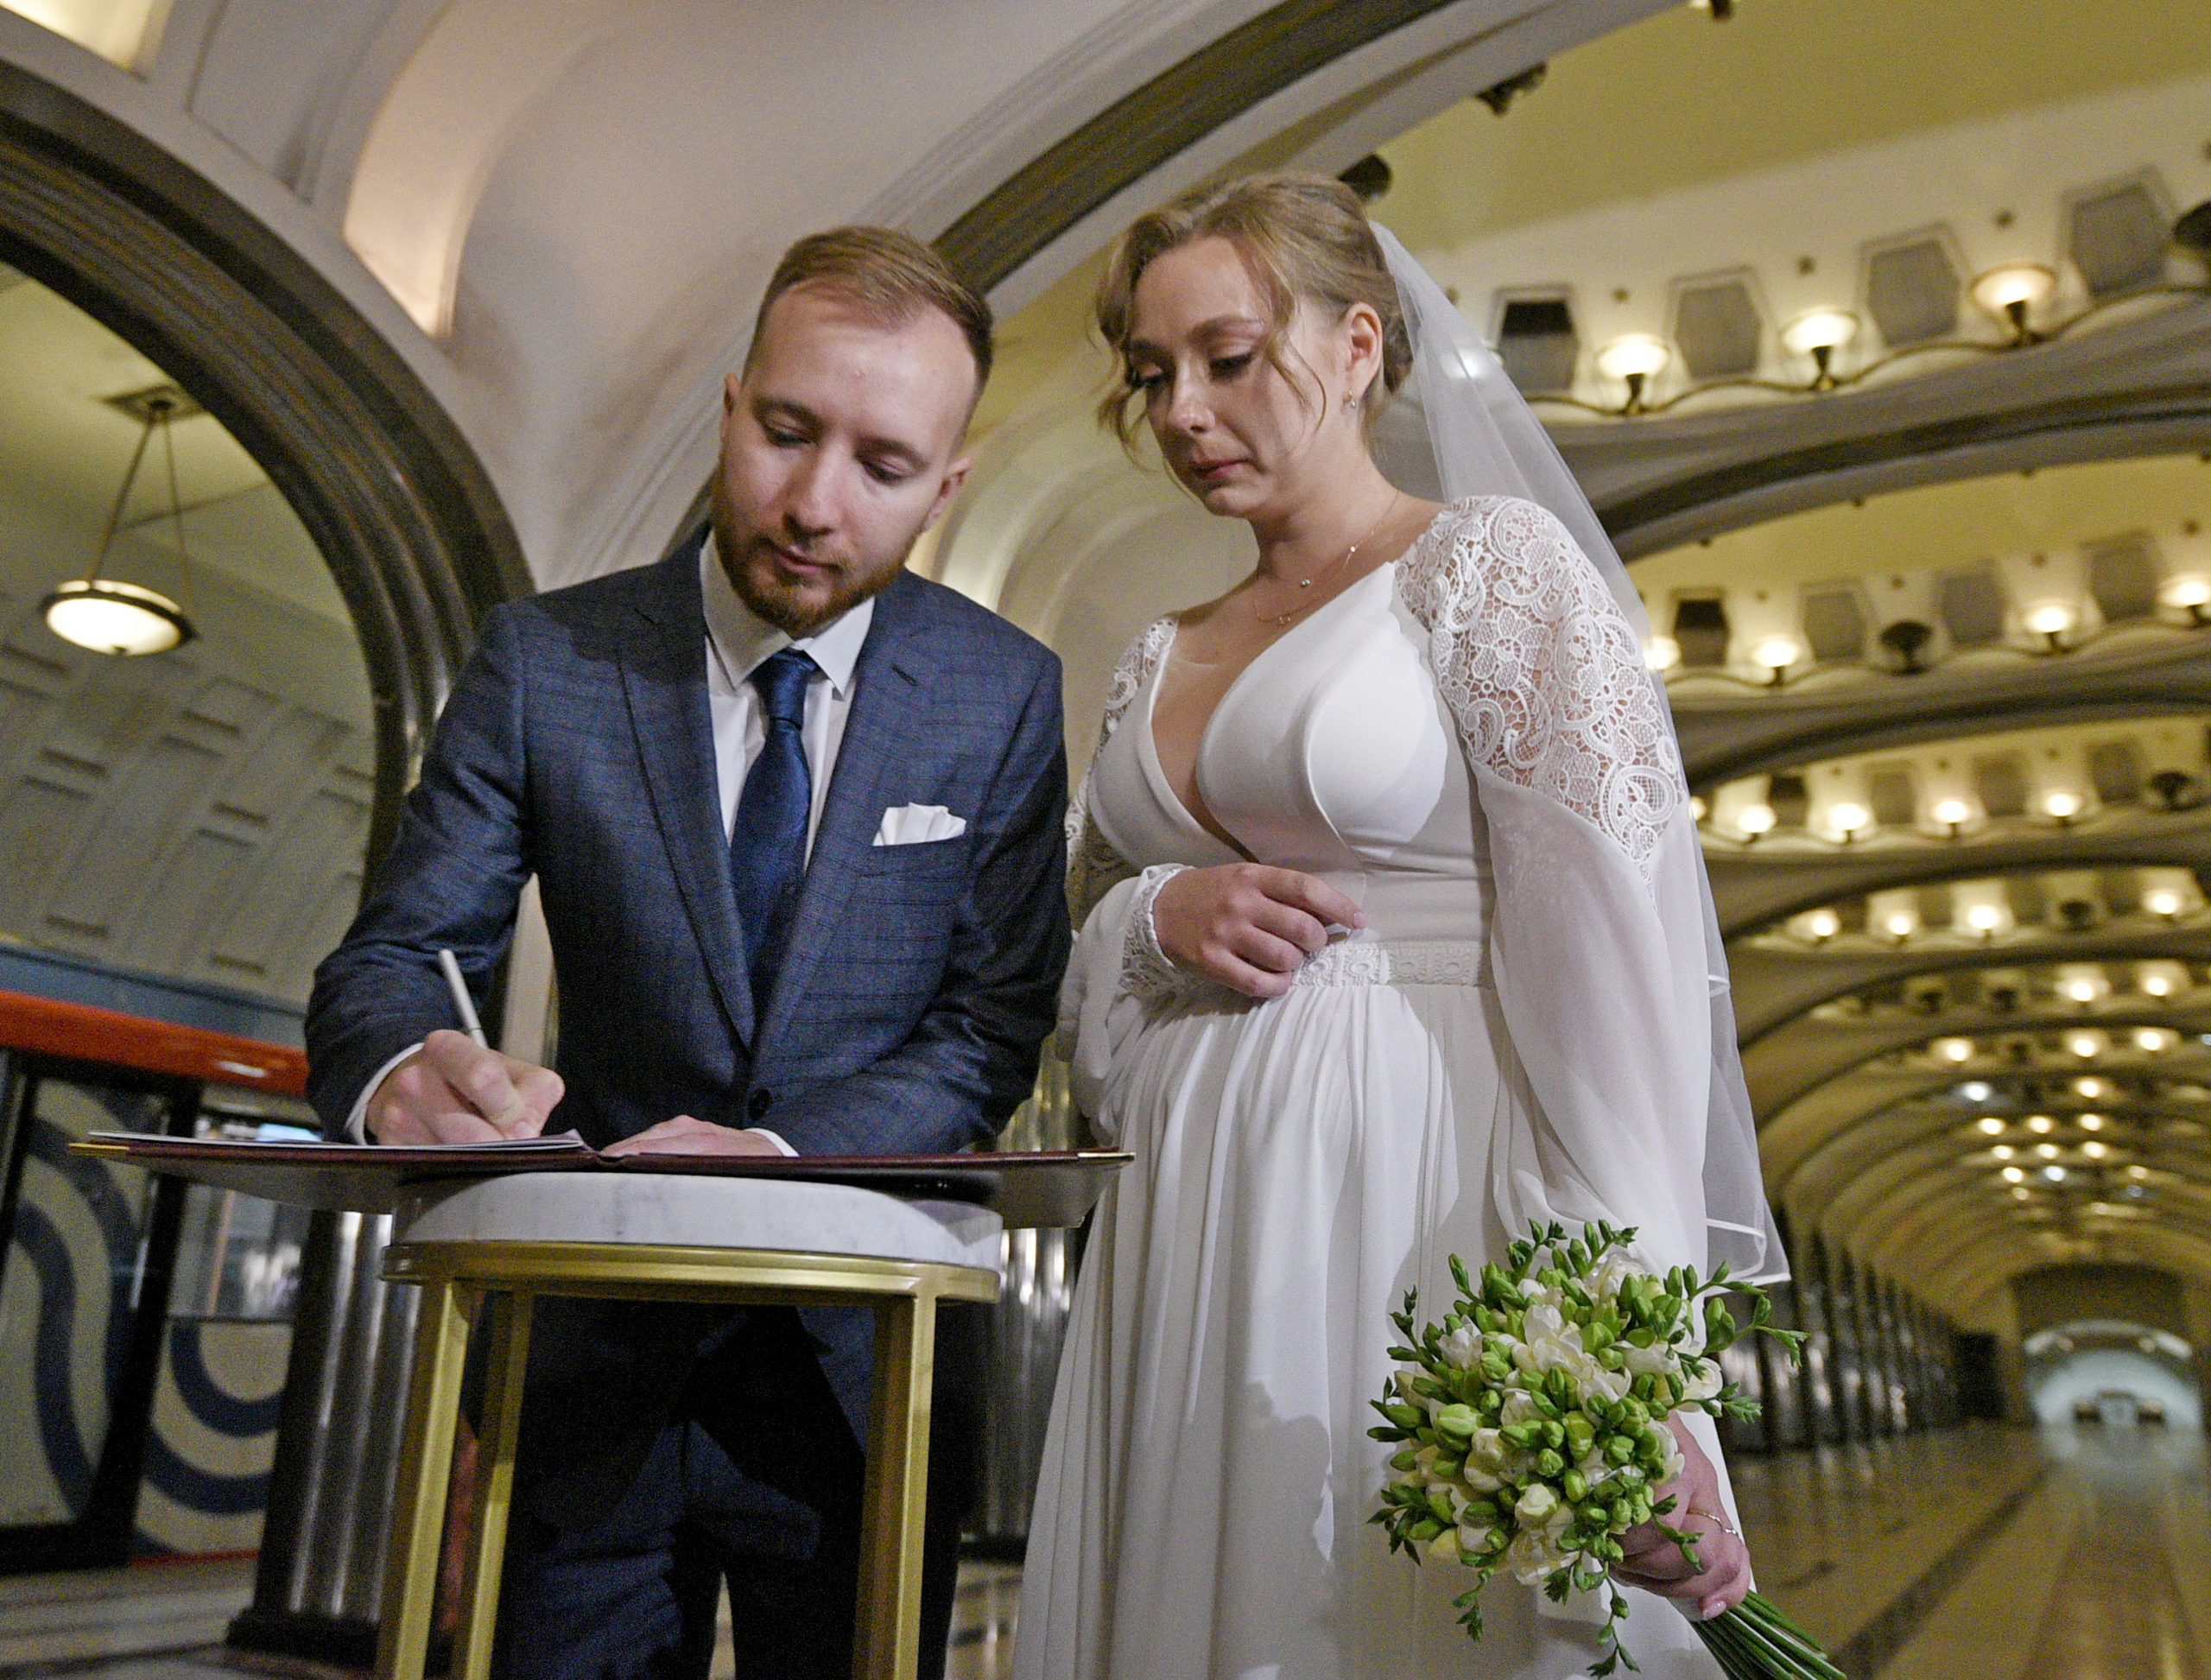 День города ознаменовался множеством заключенных браков в столице. Фото: Пелагия Замятина, «Вечерняя Москва»